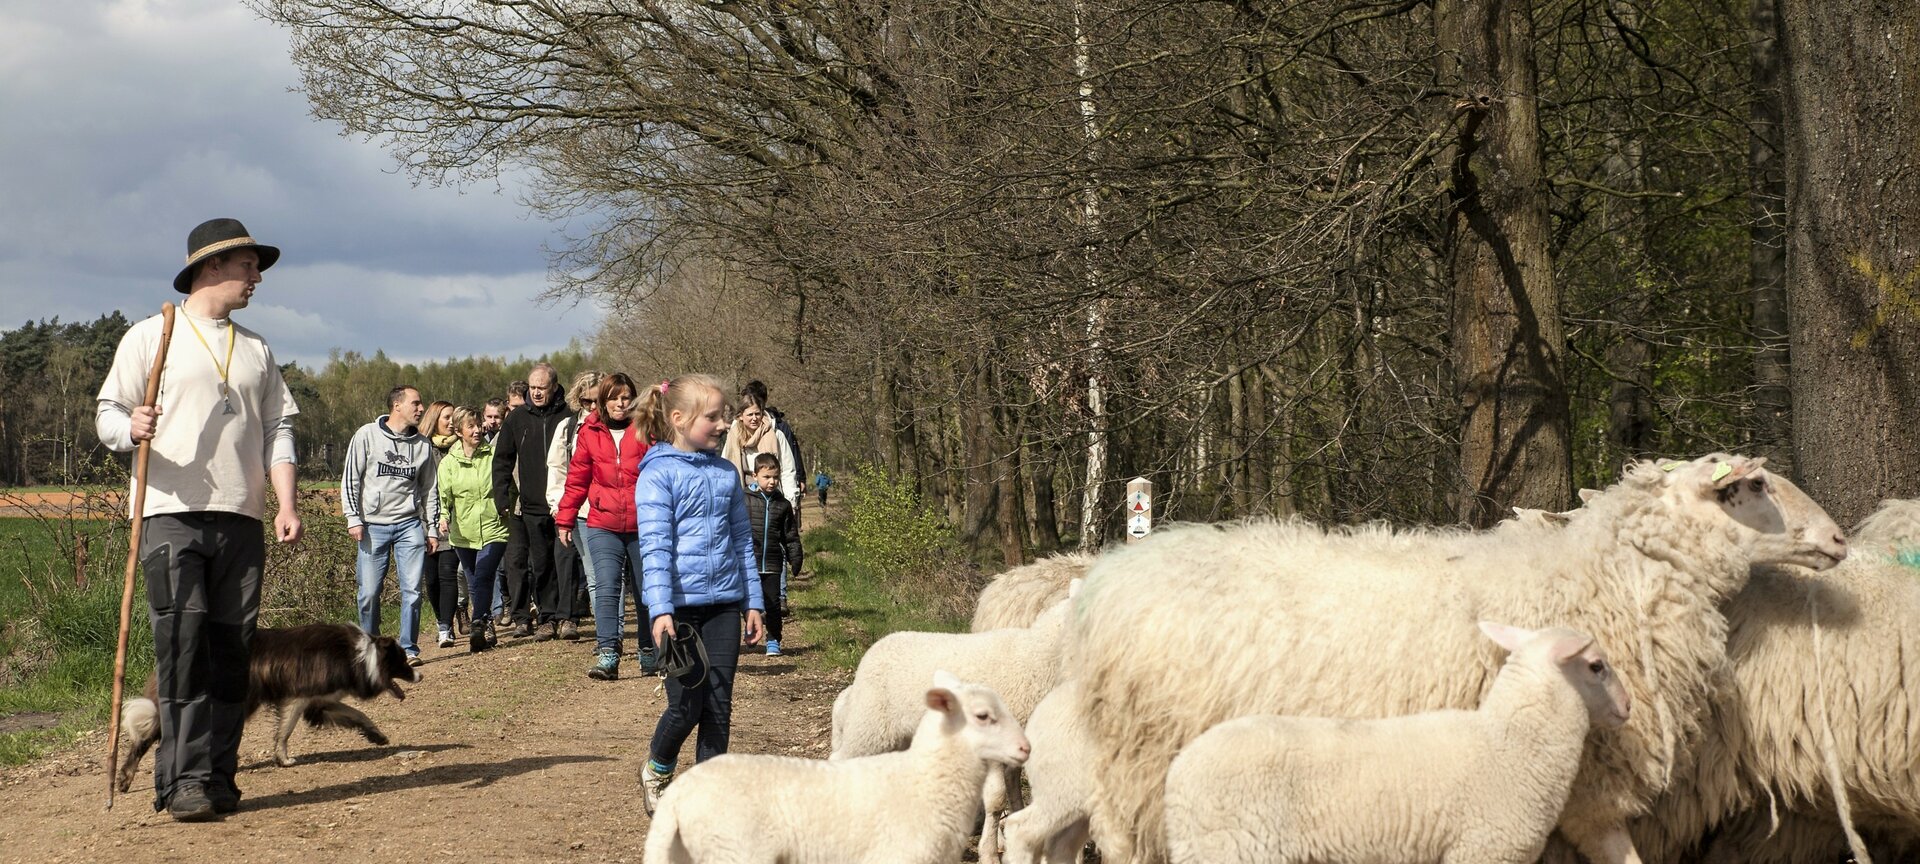 Picknickwandeling met de herder en zijn schapen - Picknickwandeling met de herder en zijn schapen